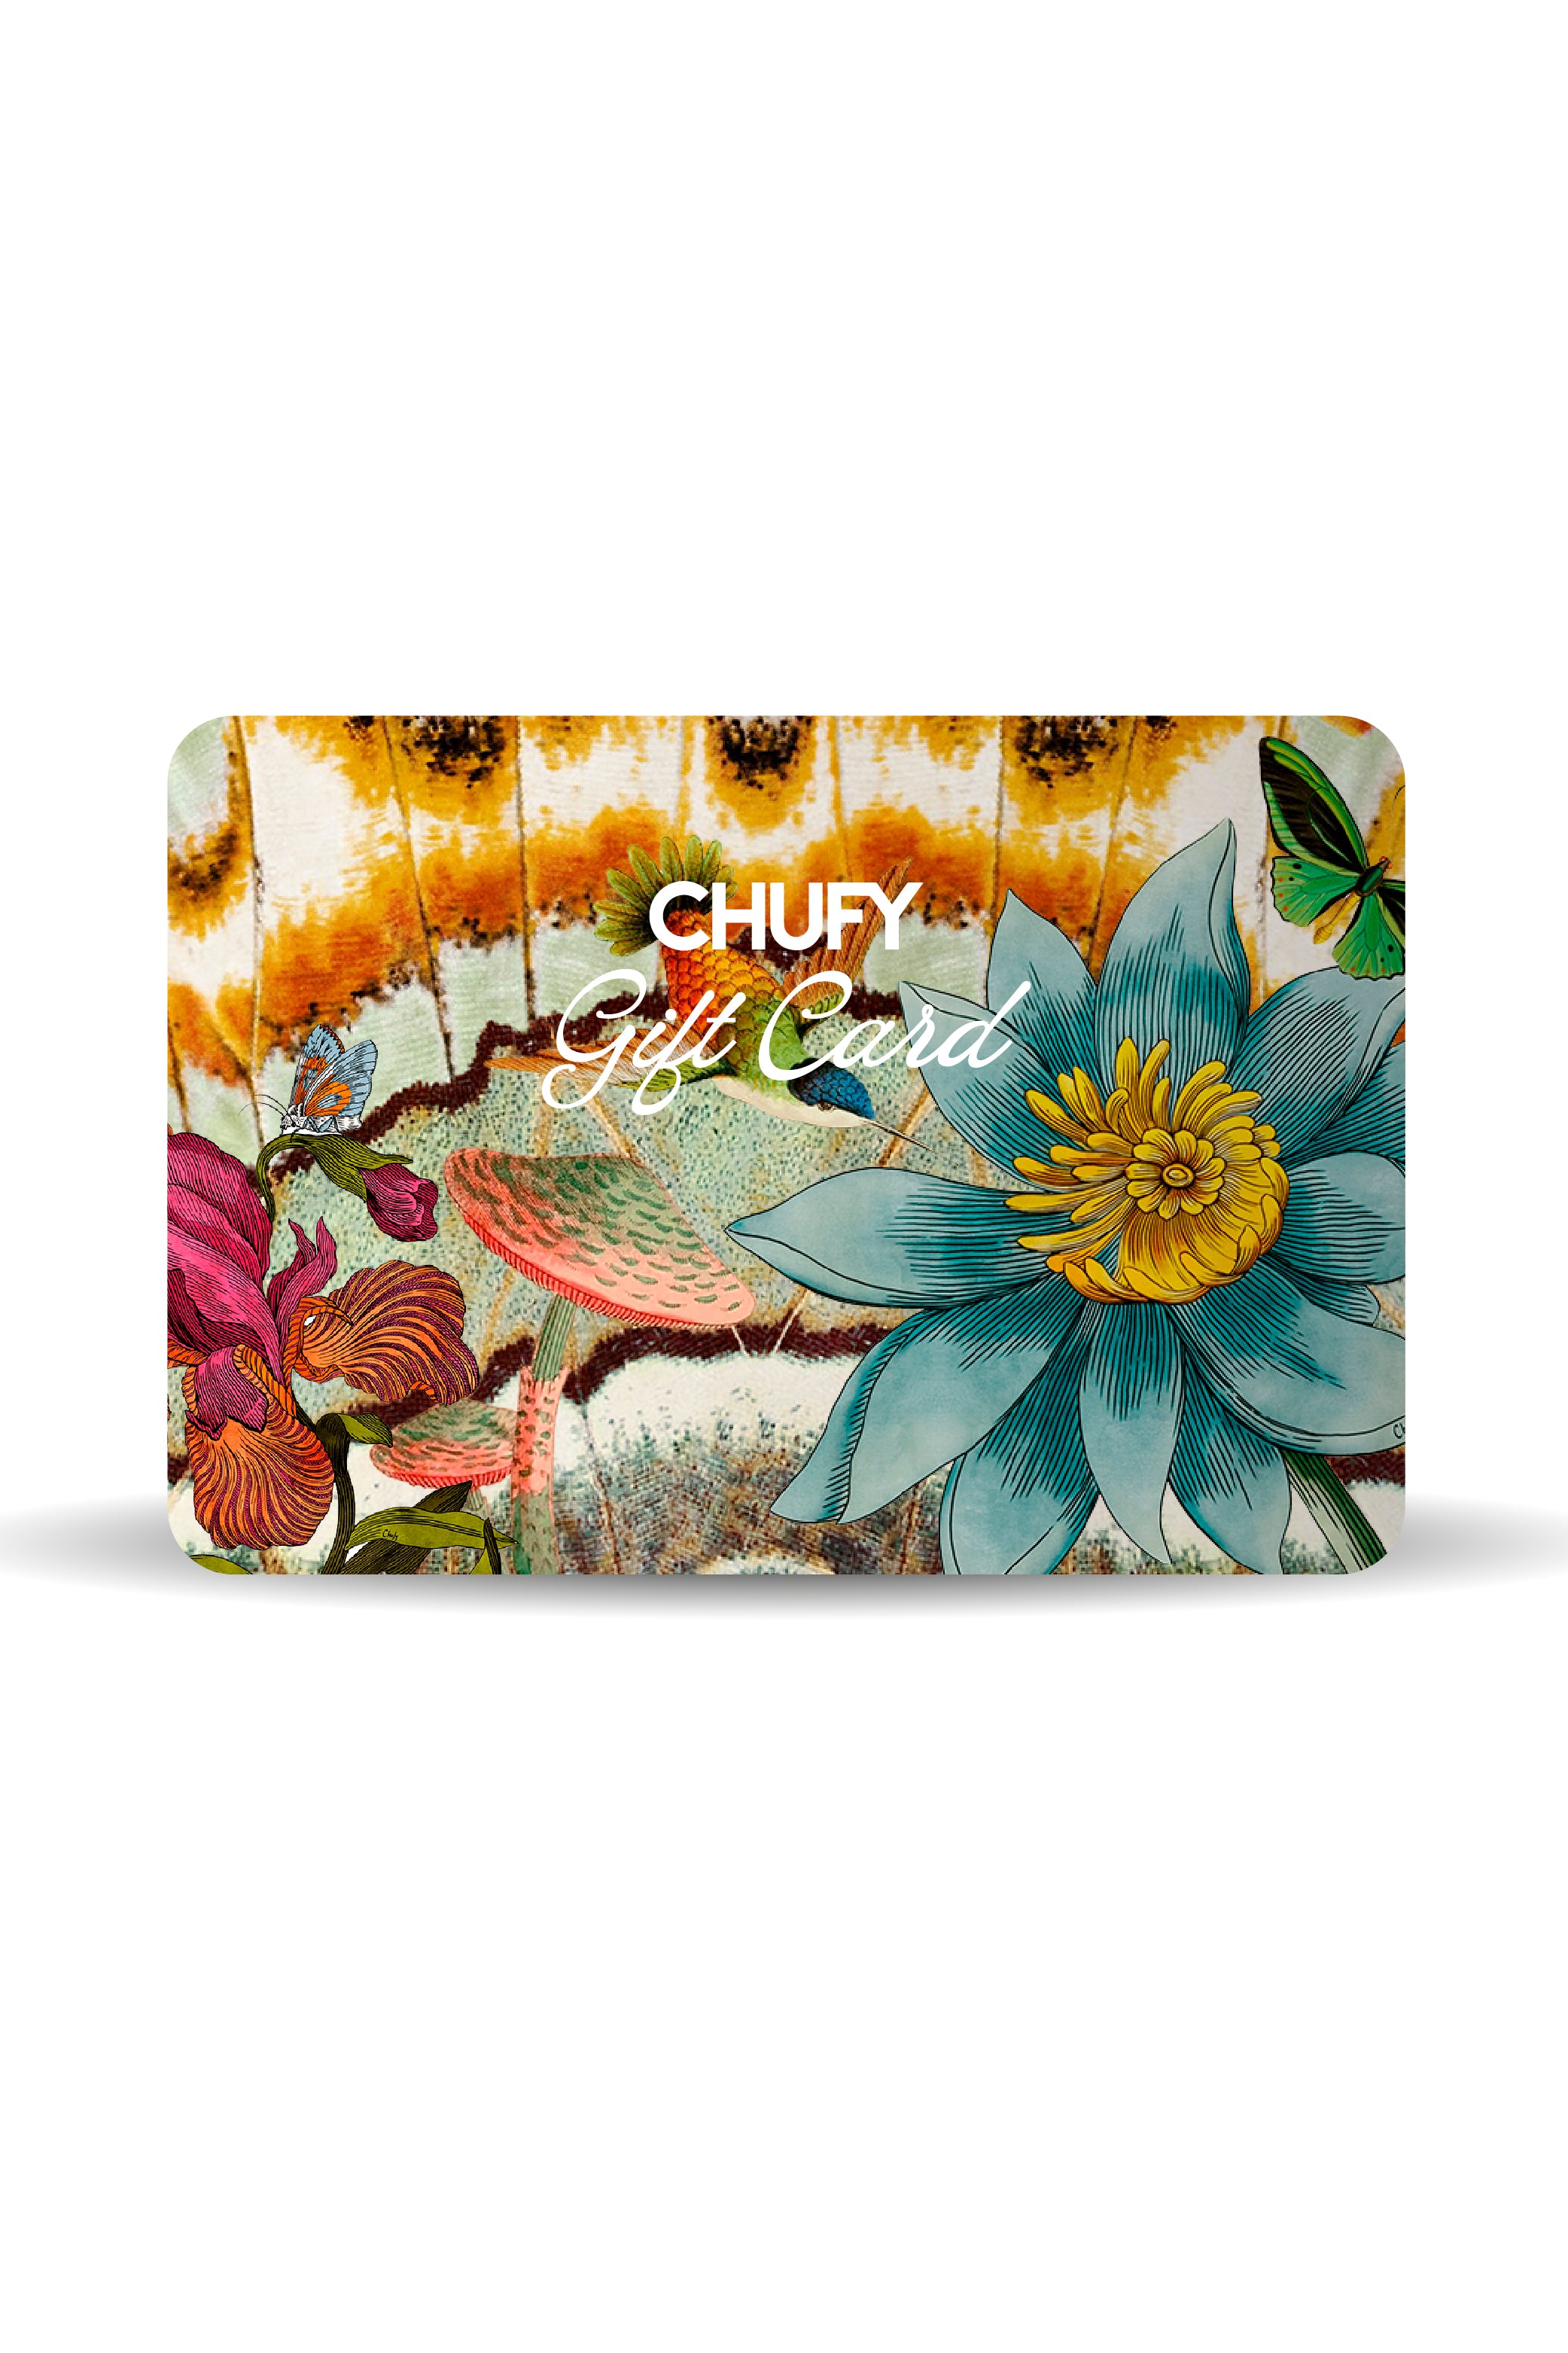 Chufy Gift Card